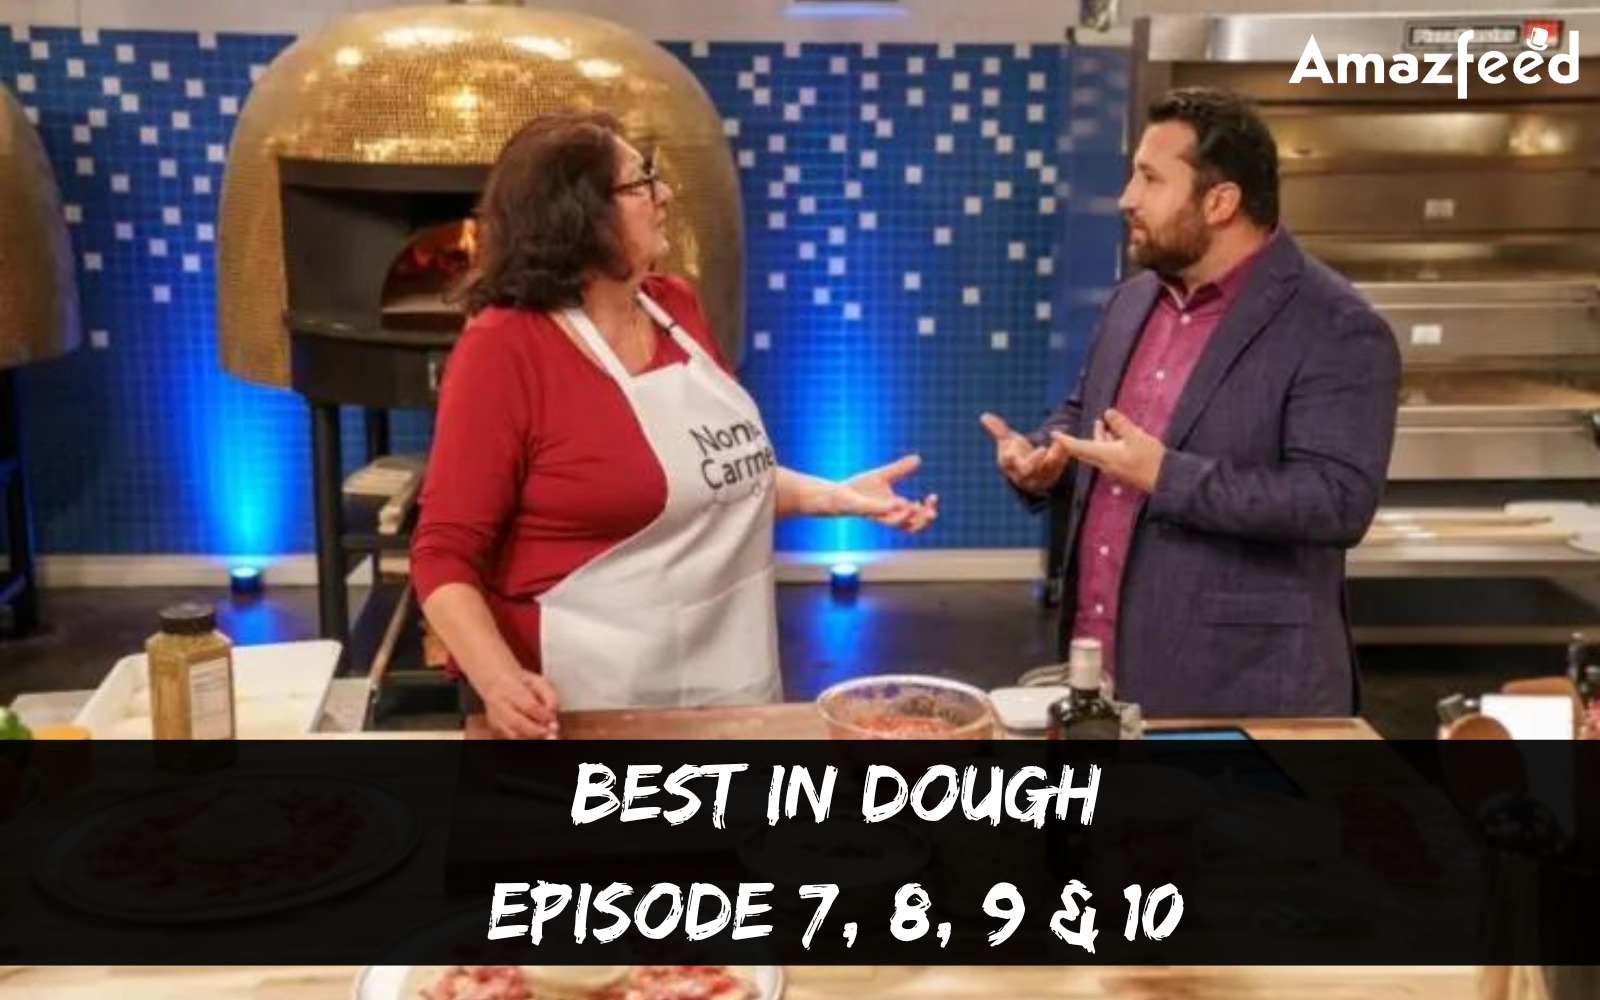 Best In Dough Episode 7, 8, 9 & 10 countdown